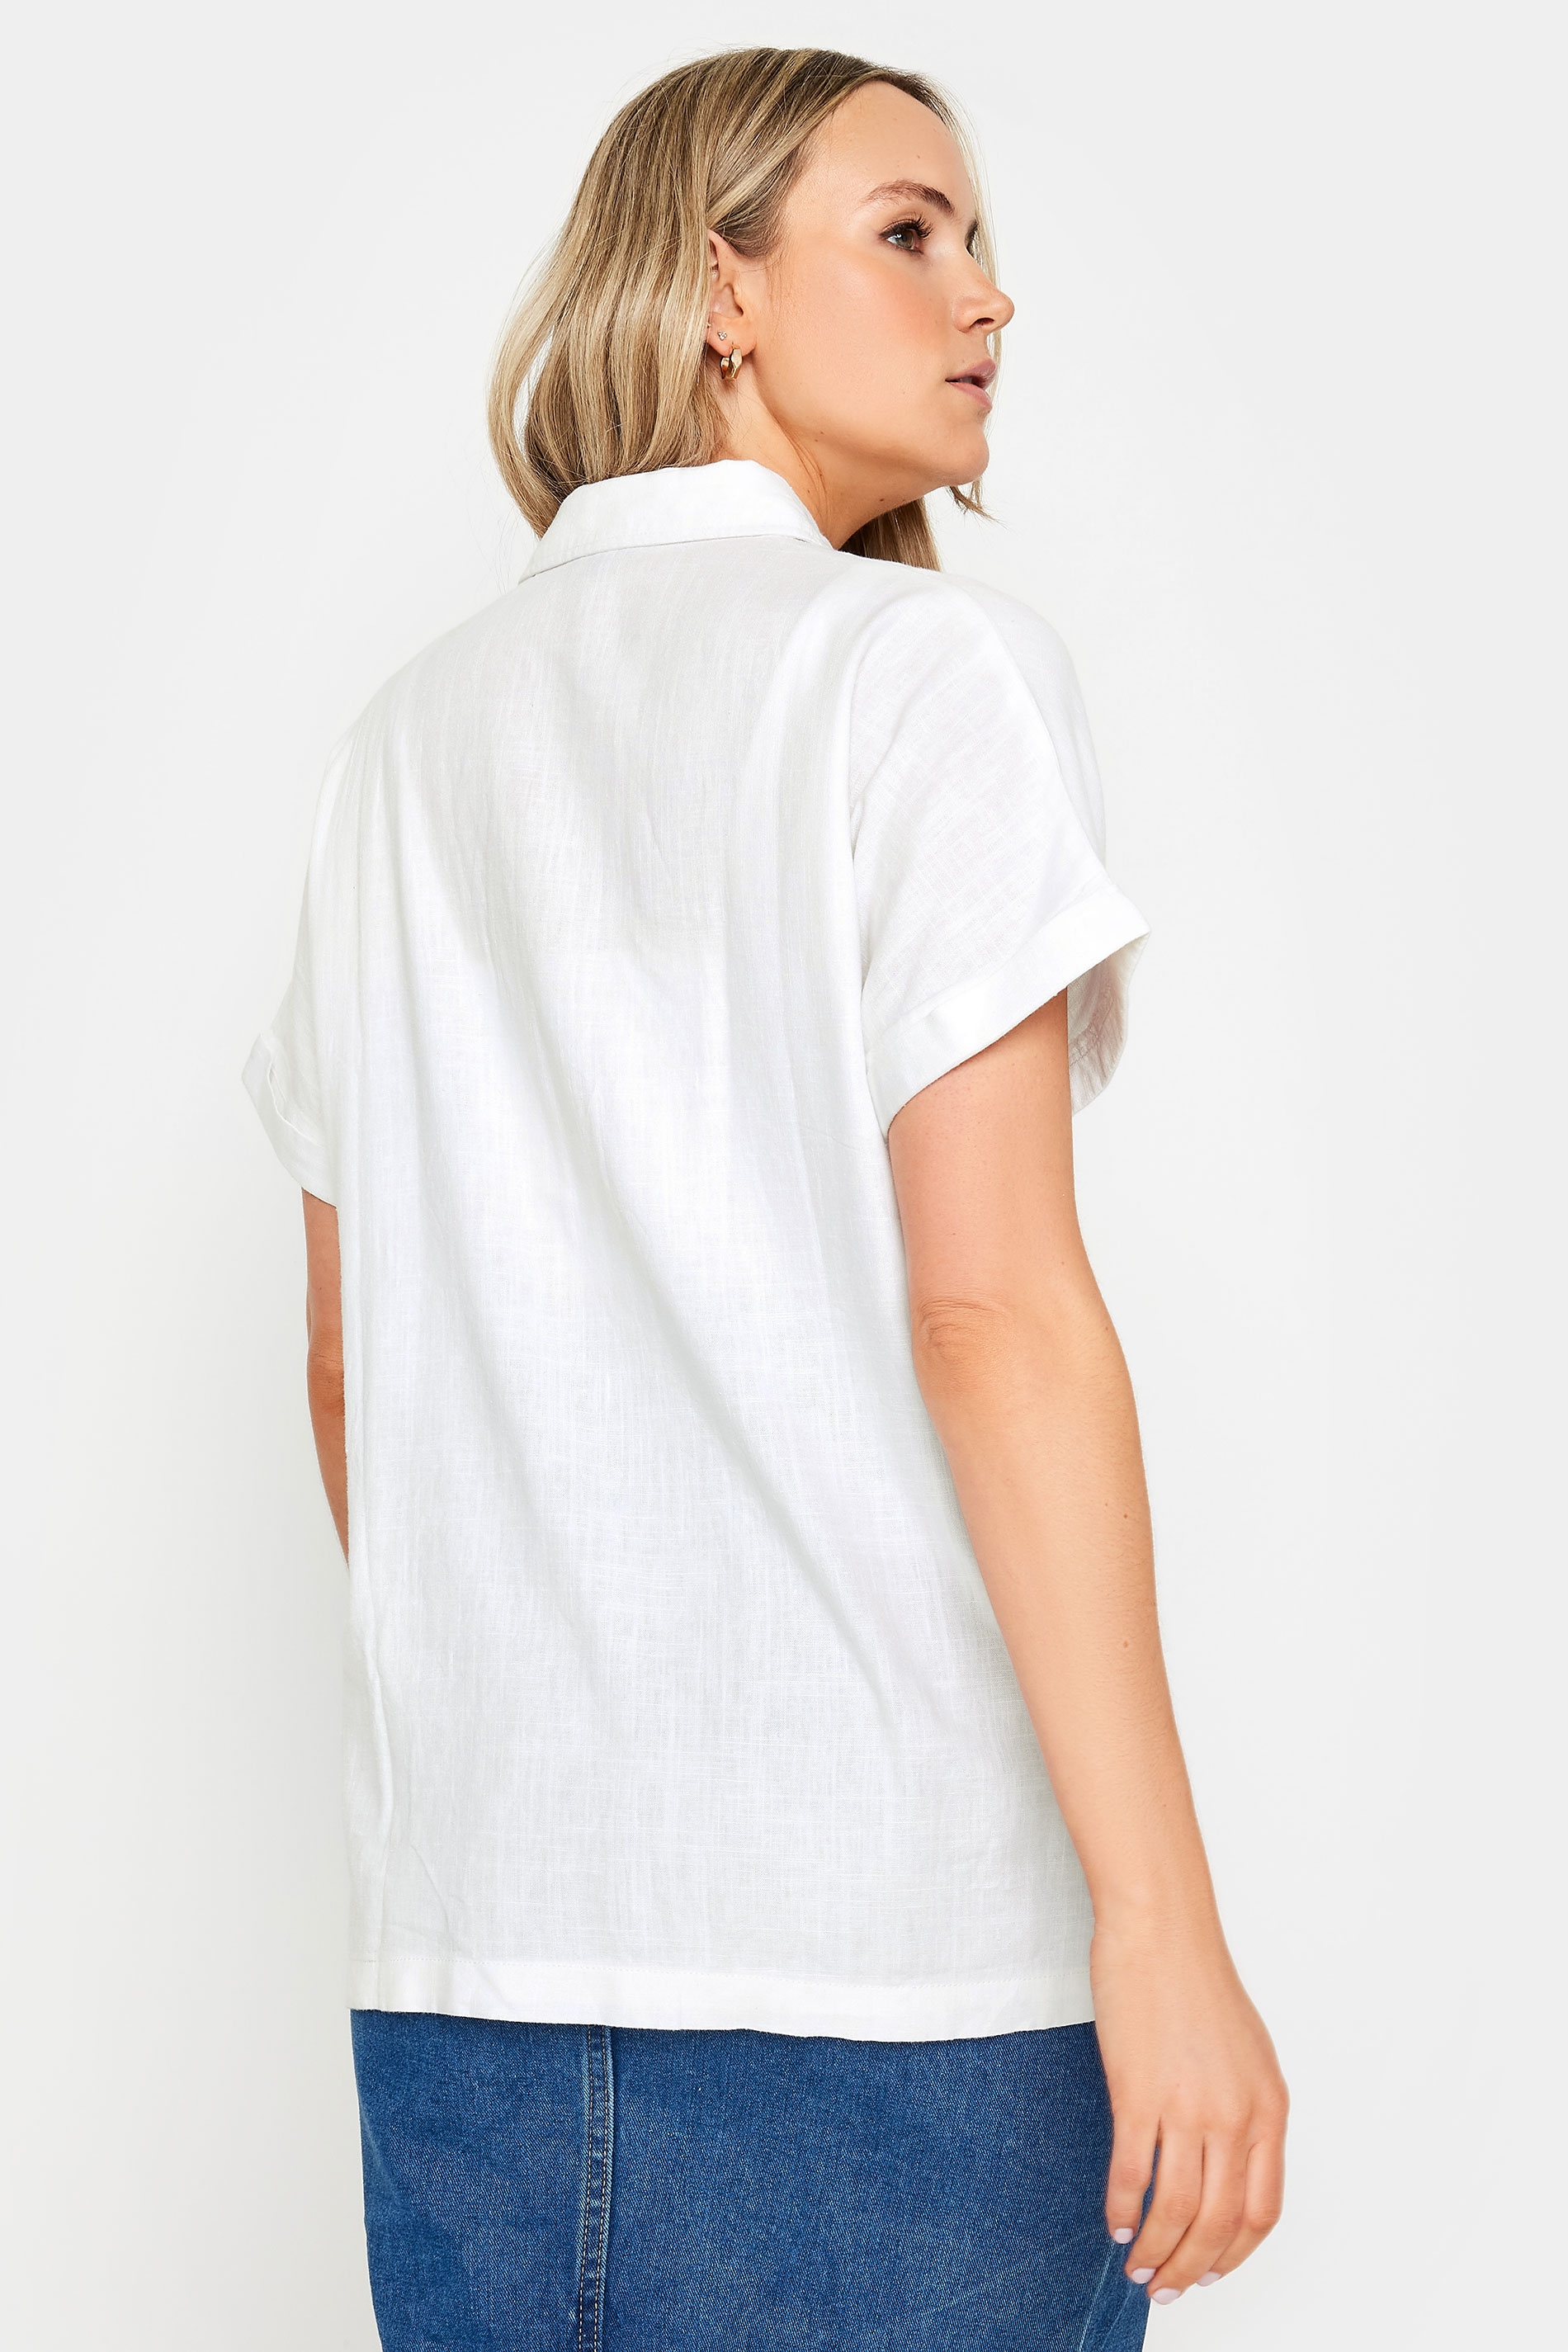 LTS Tall Womens White Linen Short Sleeve Shirt | Long Tall Sally 3